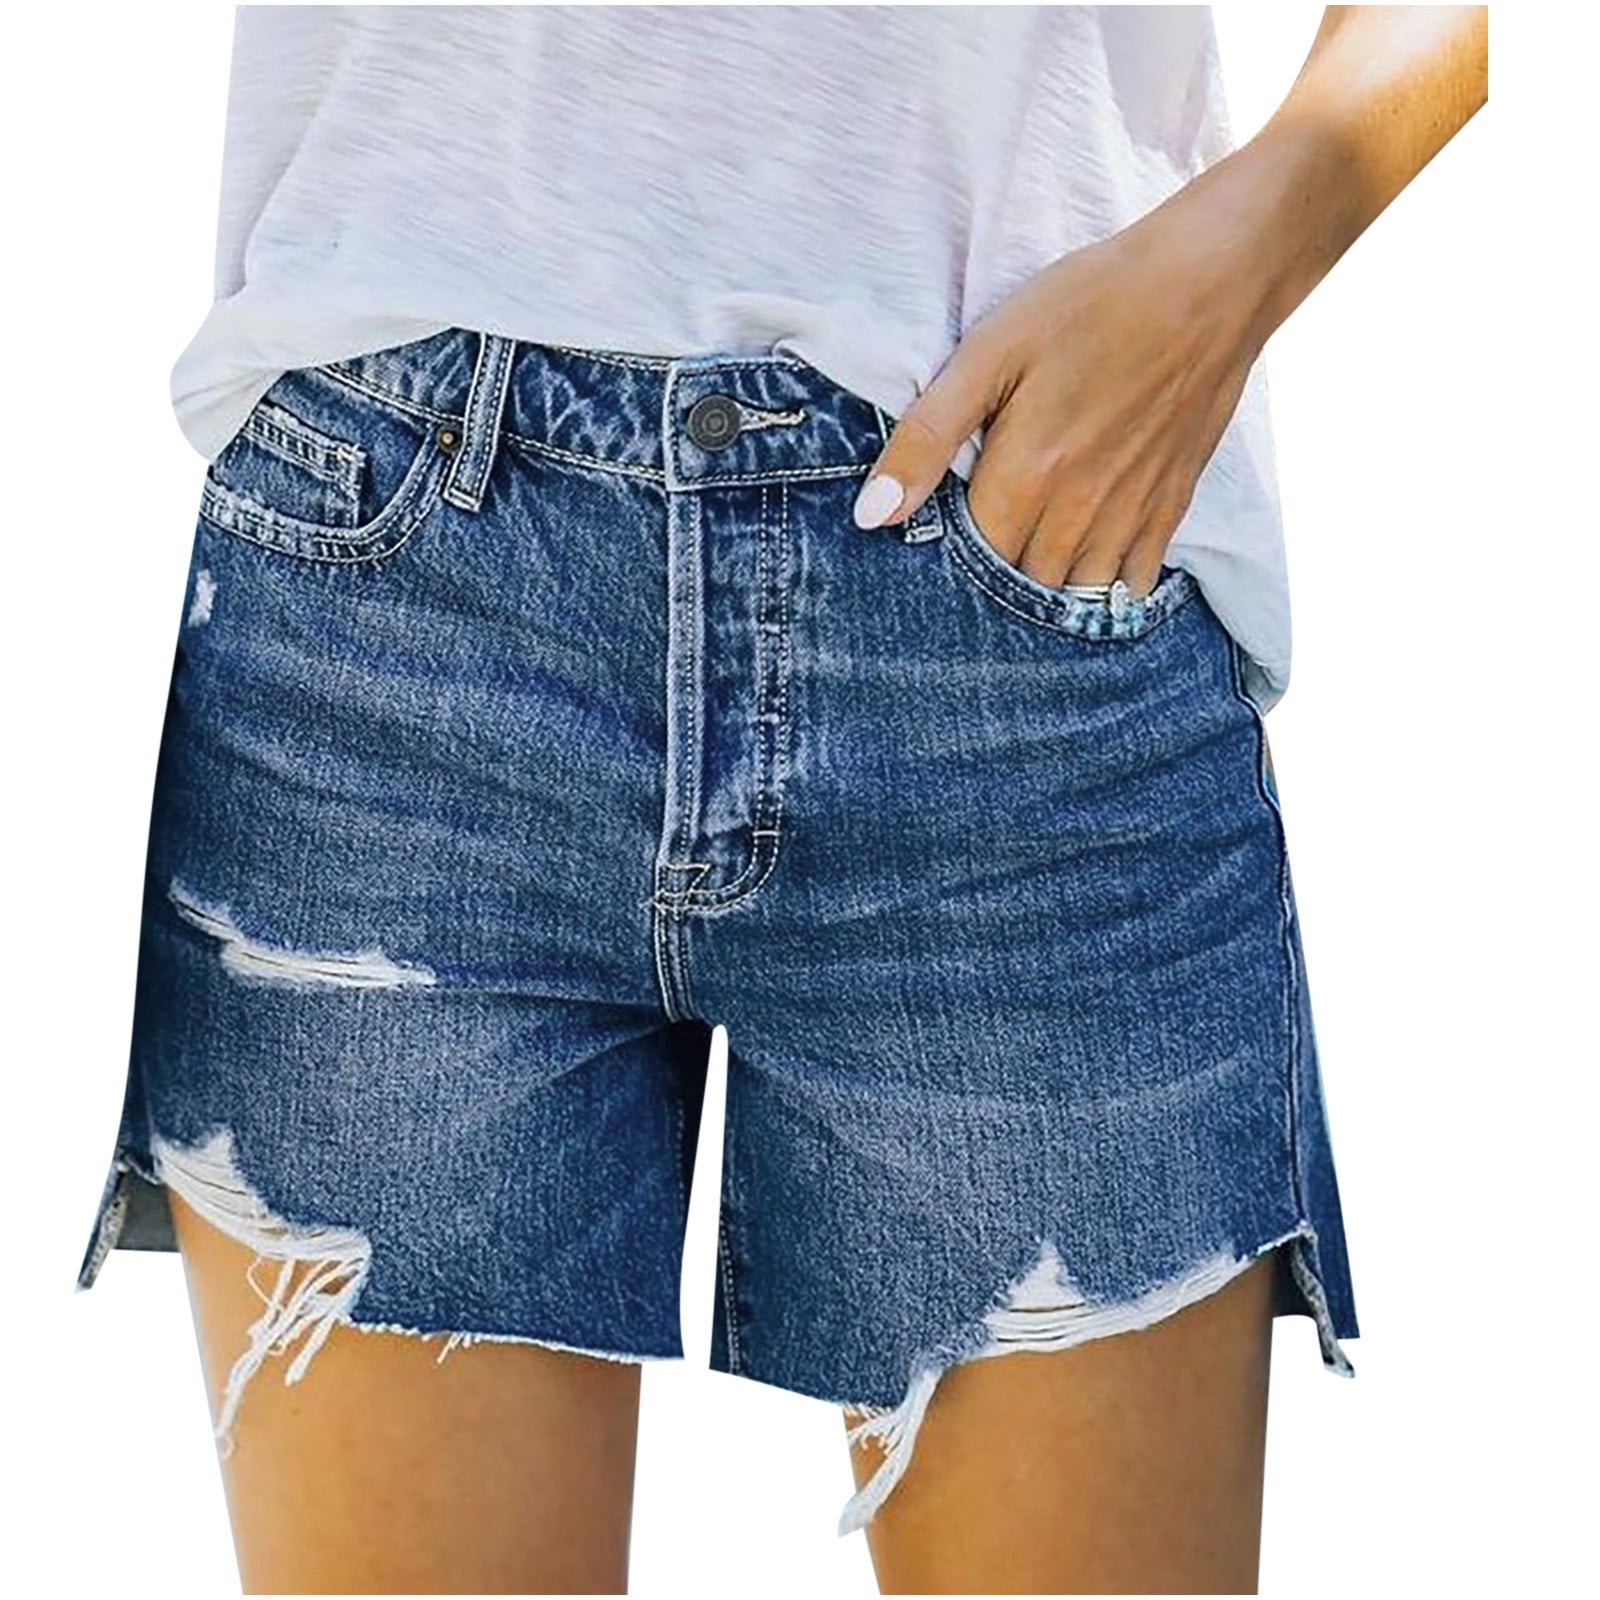 Zanvin Summer Shorts Clearance, Womens High Waisted Jean Shorts Summer ...